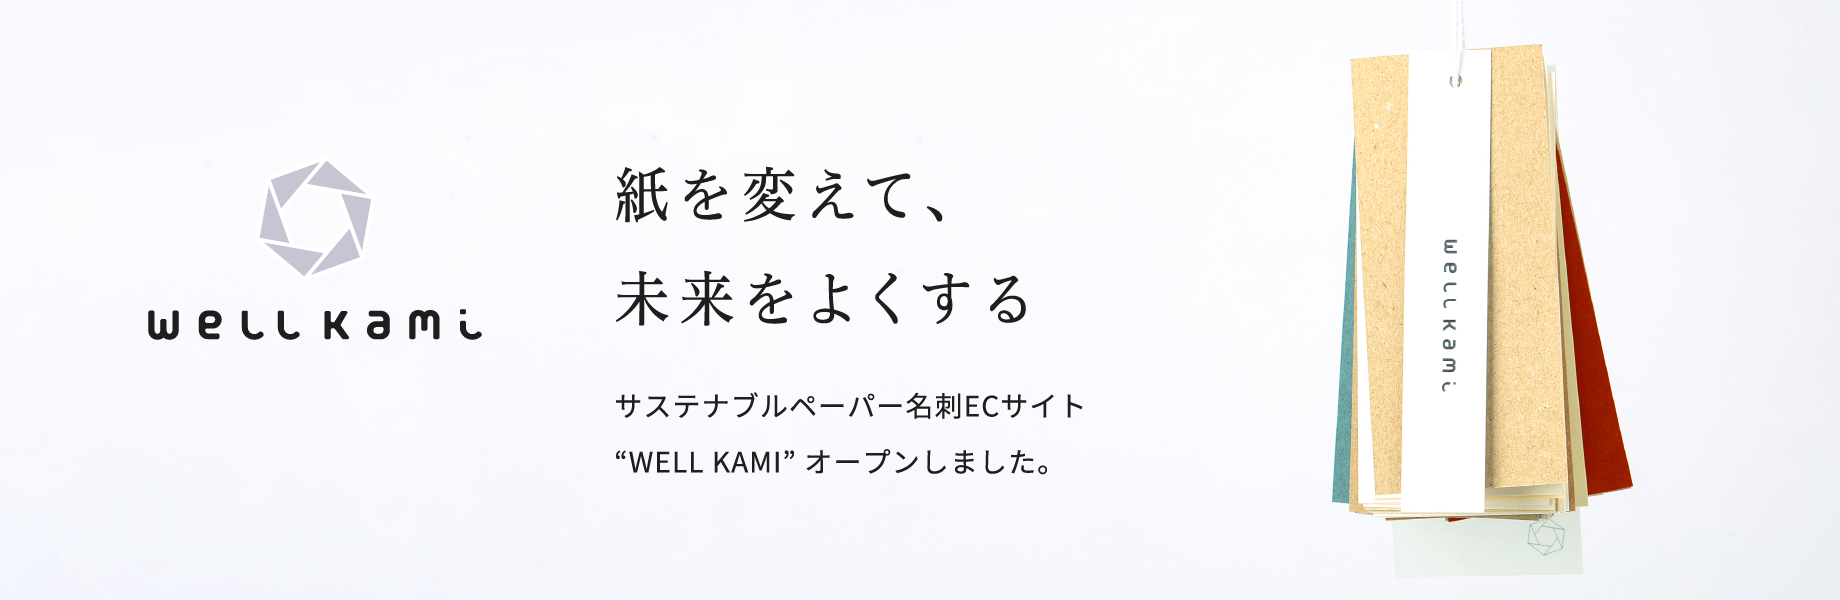 “Well Kami サステナブルペーパー名刺ECサイト 株式会社アートプロセス